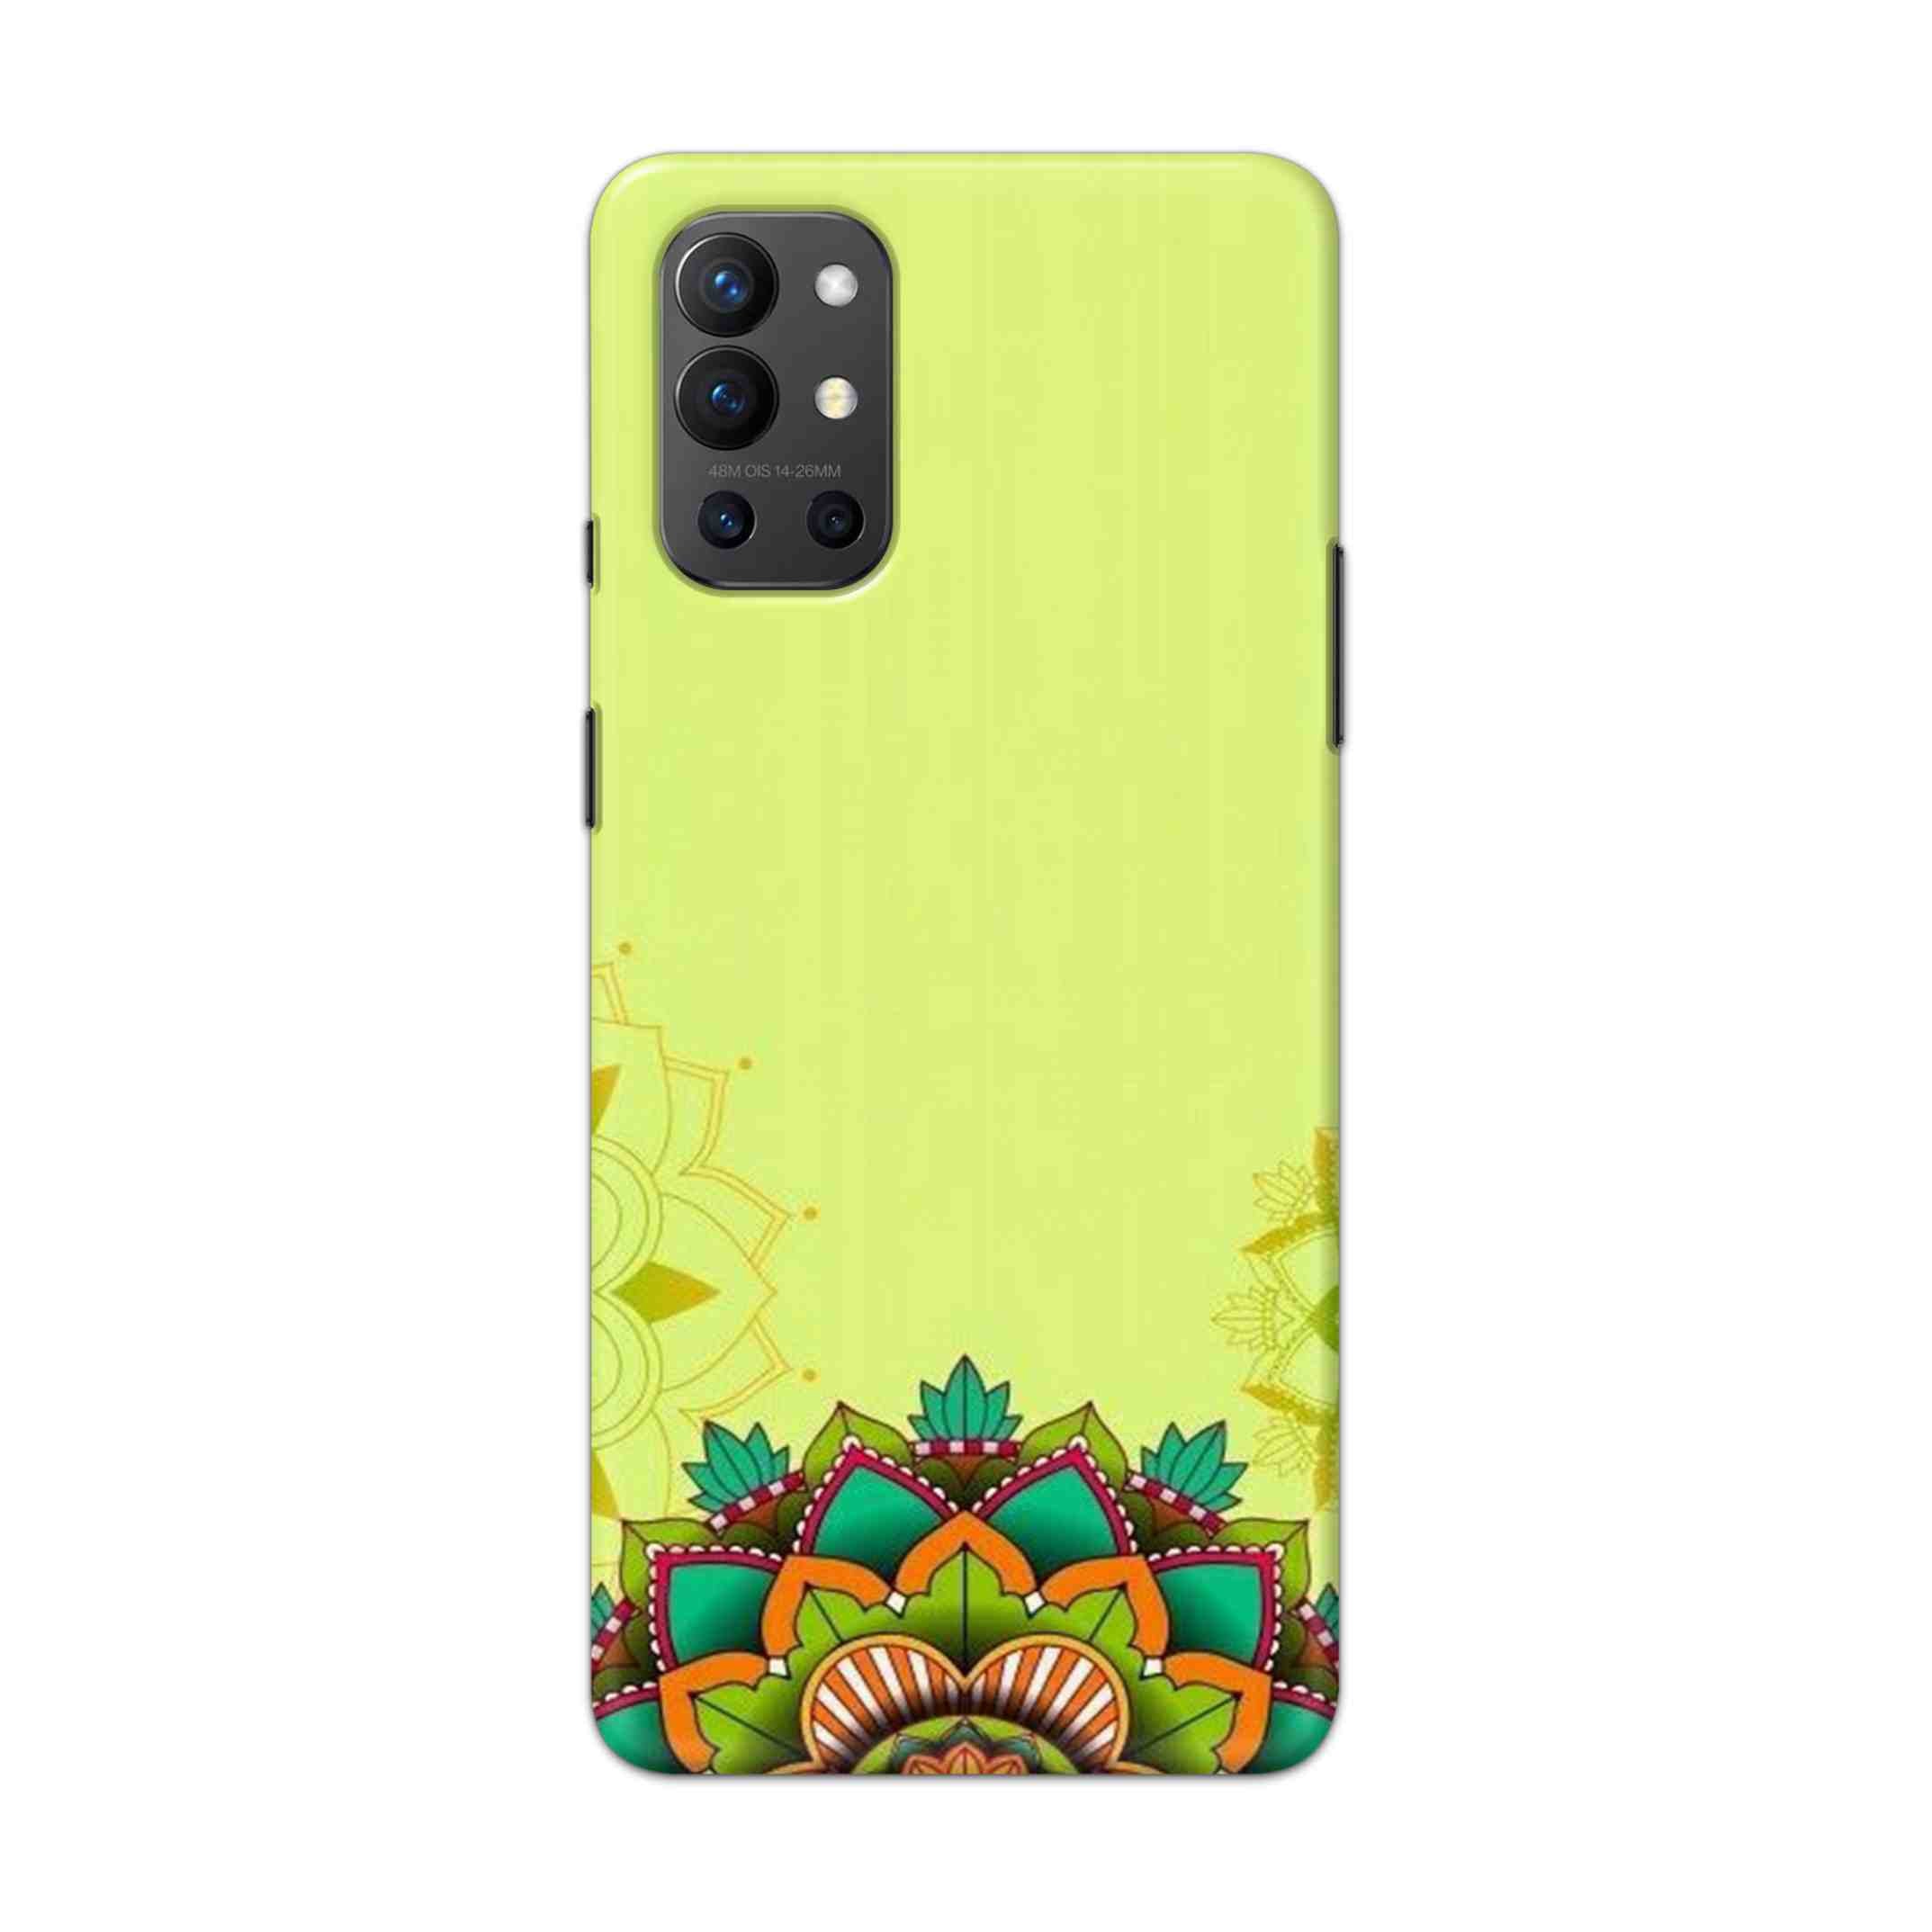 Buy Flower Mandala Hard Back Mobile Phone Case Cover For OnePlus 9R / 8T Online